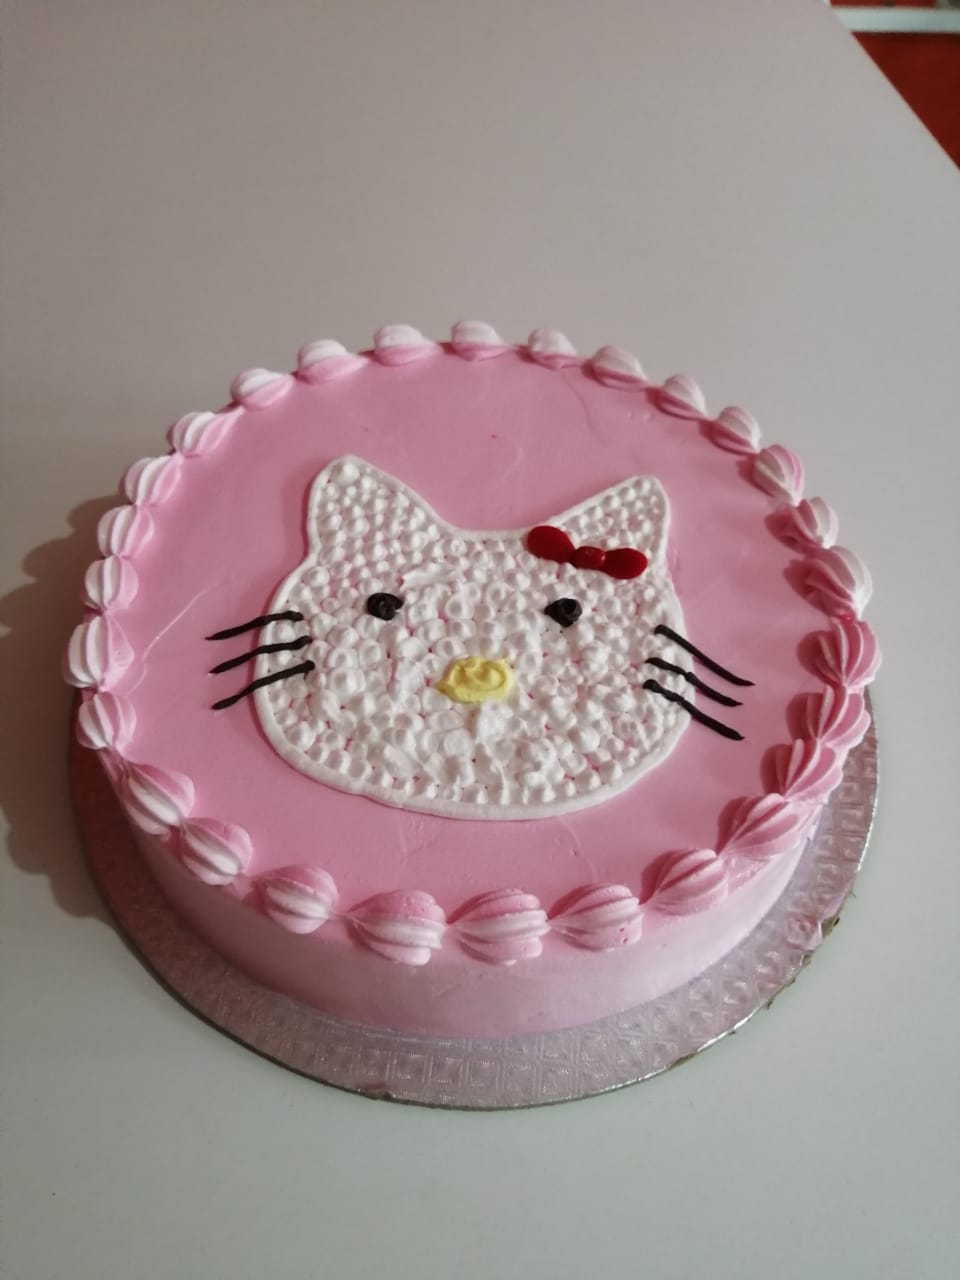 Kitty Princess Birthday Cake